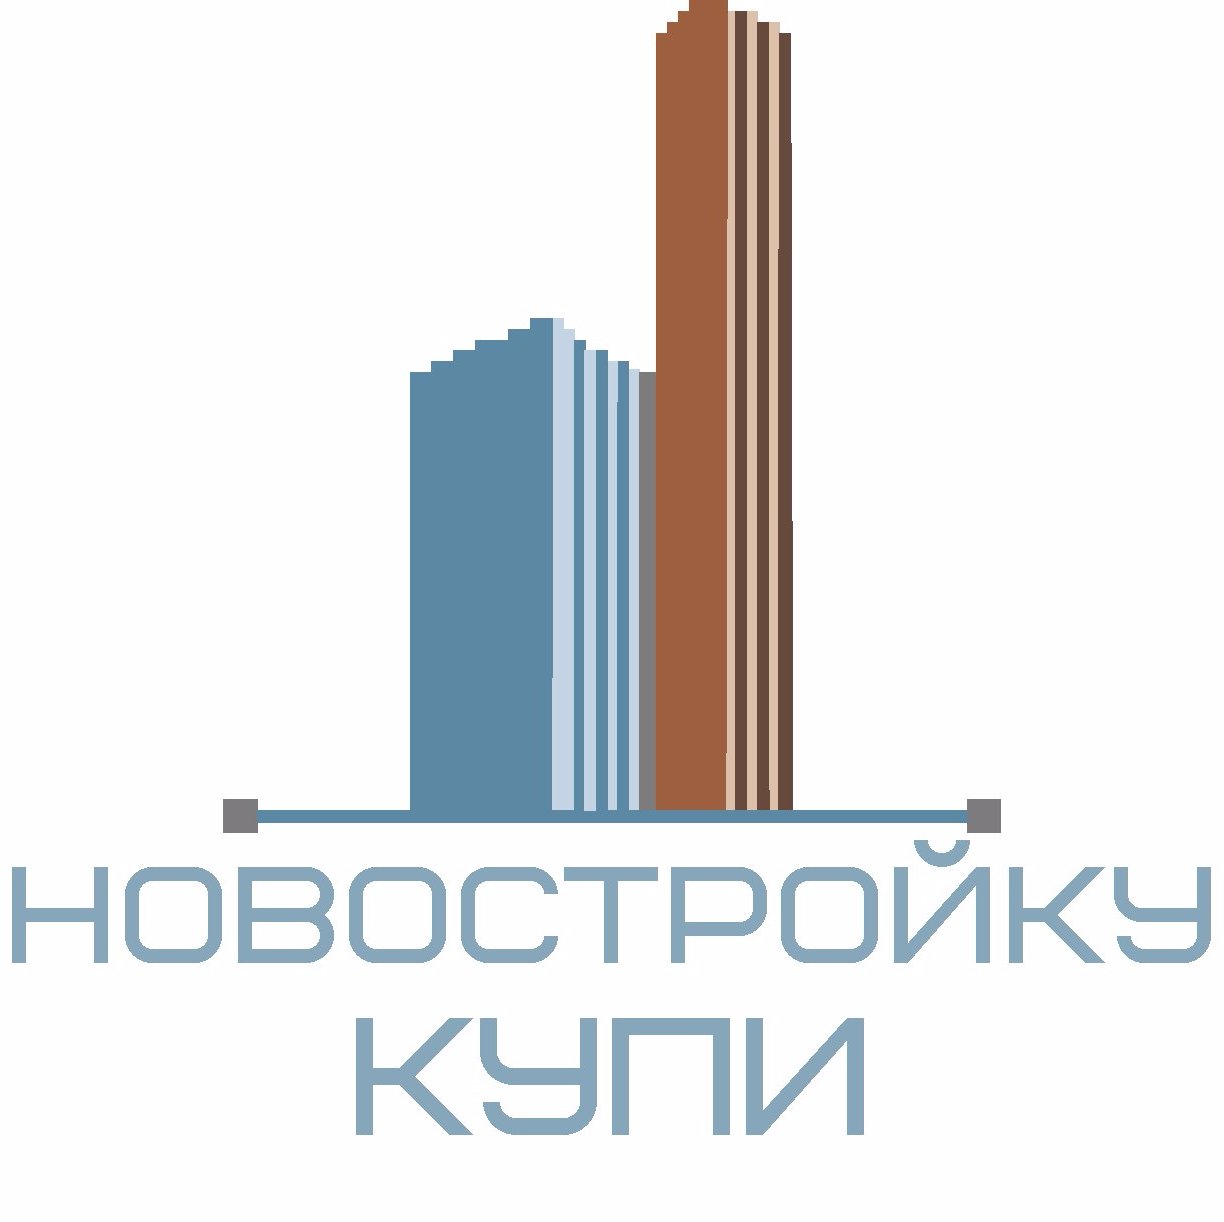 Группа Компаний «Новостройку КУПИ» предлагает весь спектр услуг по подбору новостроек в г.Краснодаре.